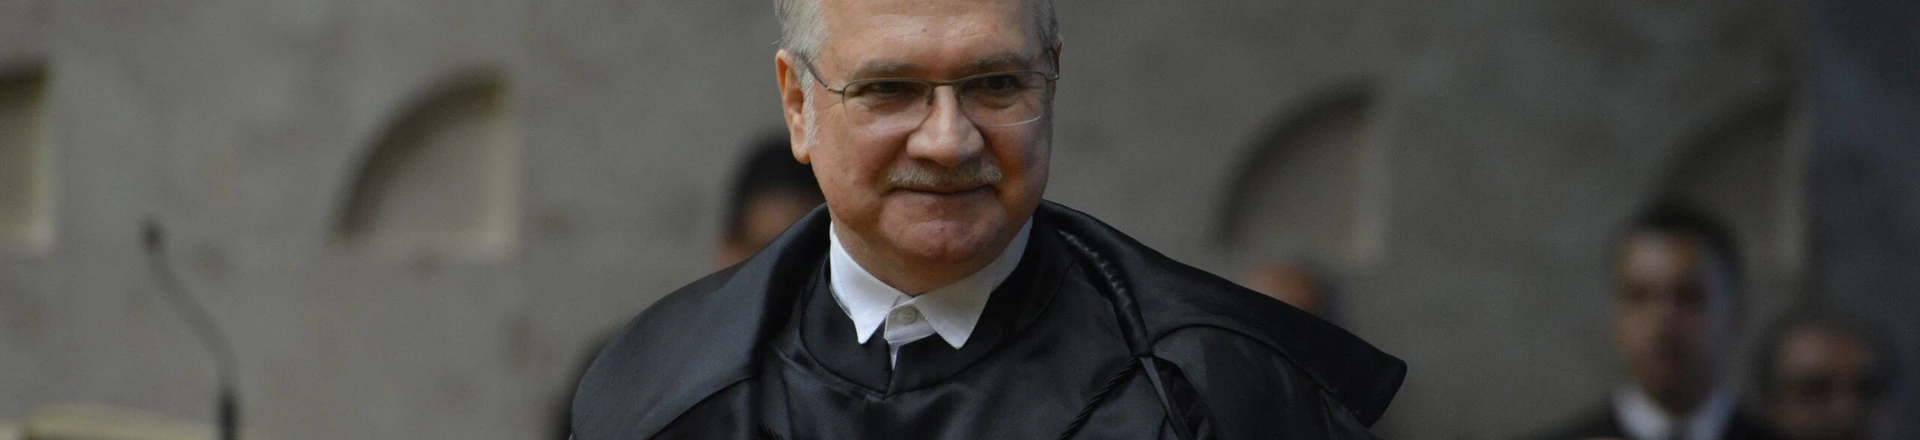 O novo ministro do Supremo Tribunal Federal (STF), Luiz Edson Fachin, toma posse em solenidade no plenário do STF (Valter Campanato/Agência Brasil)